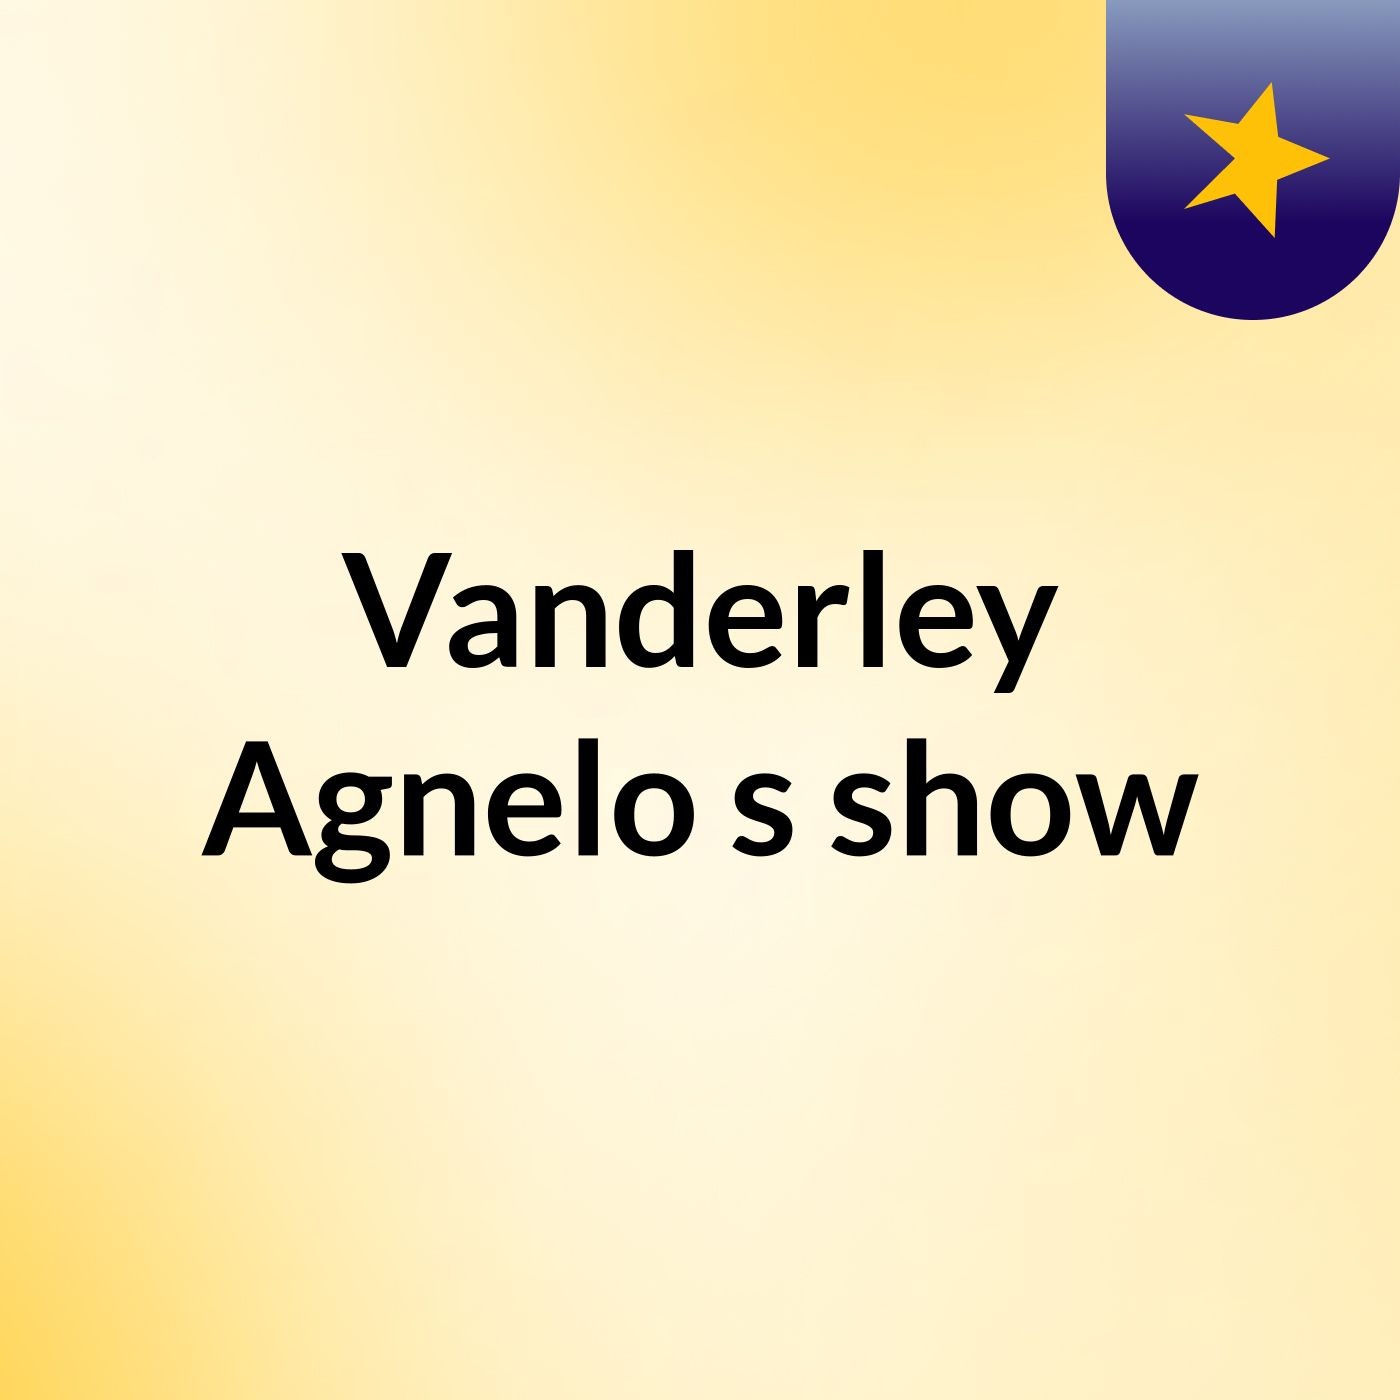 Vanderley Agnelo's show